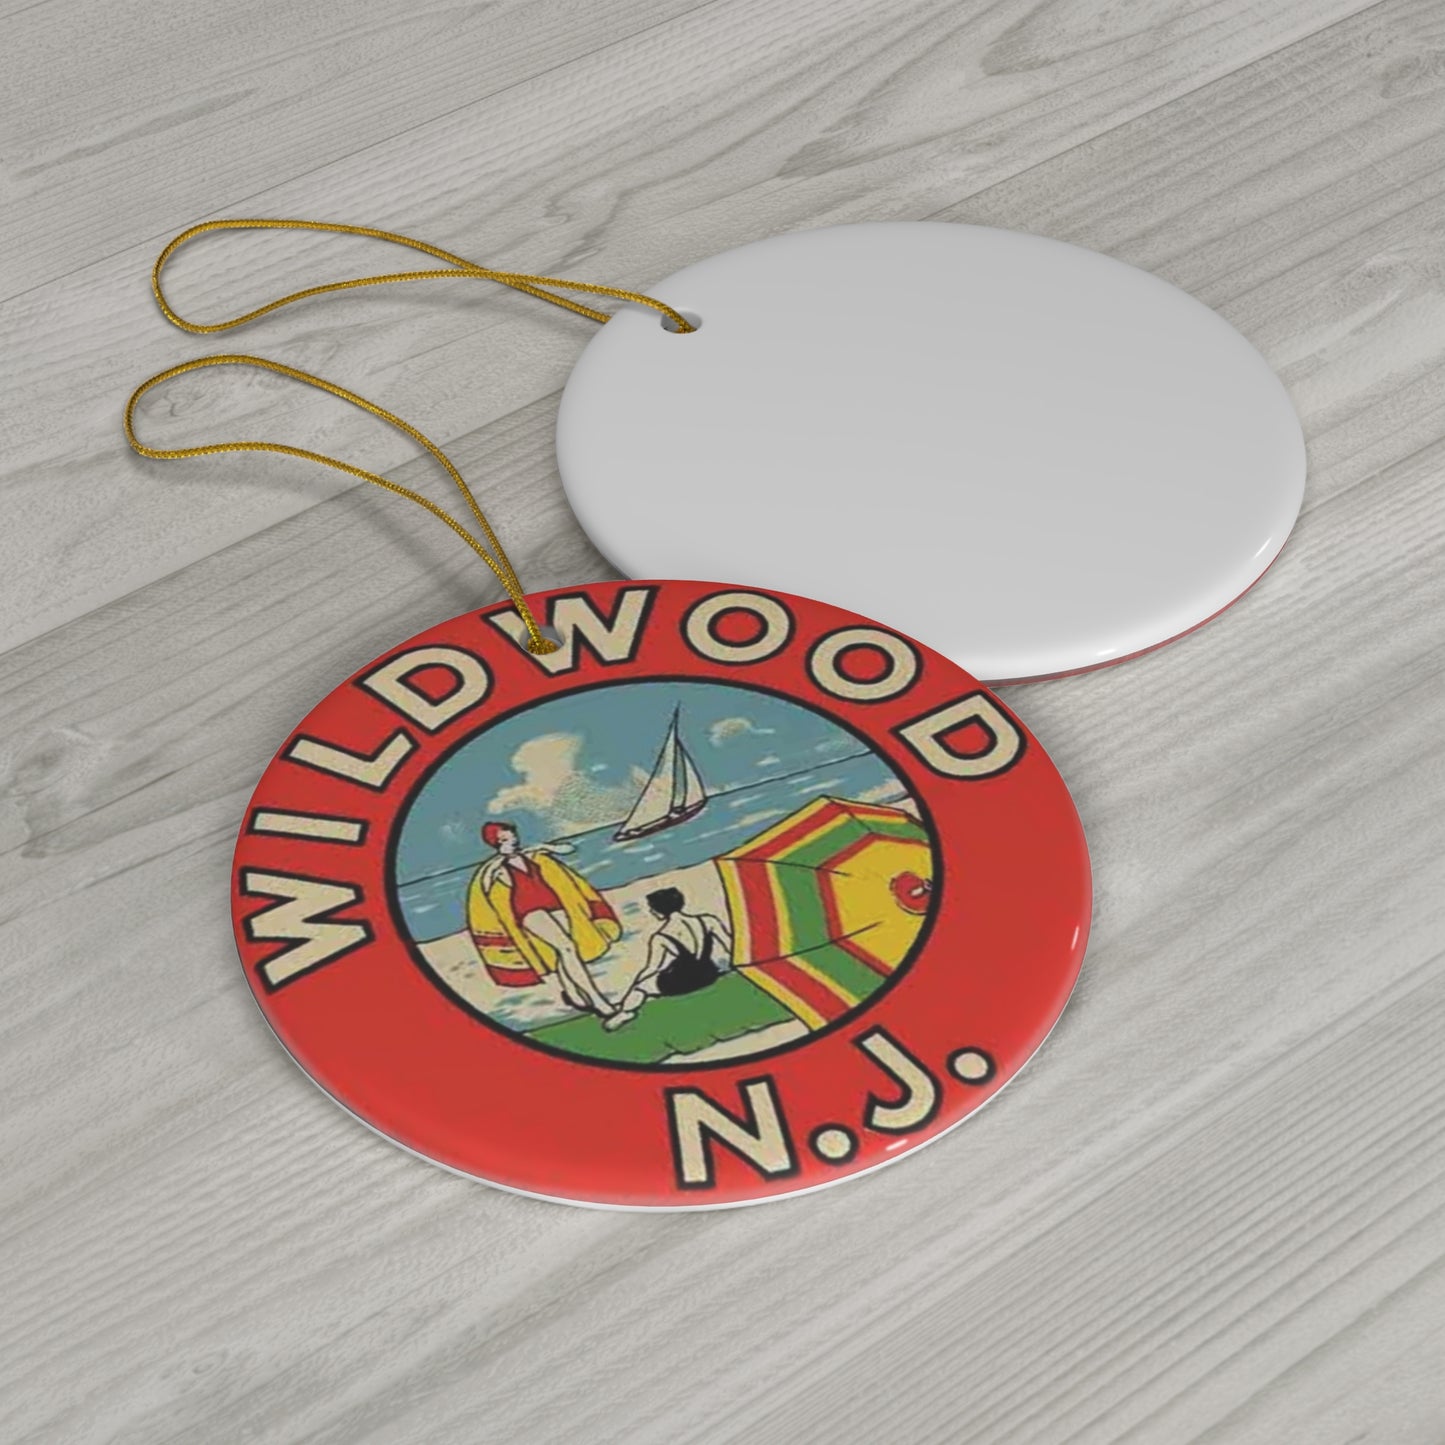 Wildwood Retro Vintage Ceramic Ornament, 1-Pack Wildwood Gift